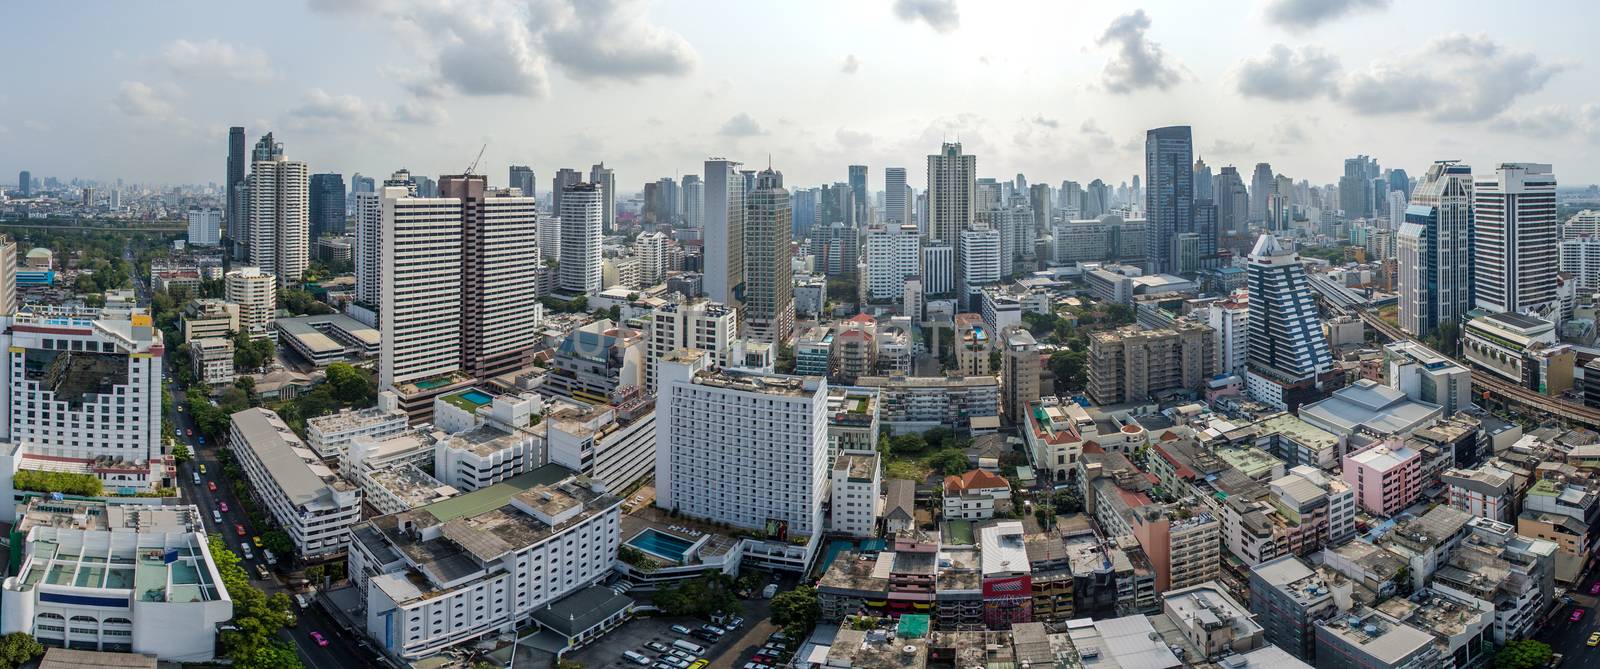 Panorama Bangkok City, Nana and Sukhumvit Road, Aerial Photograp by praethip